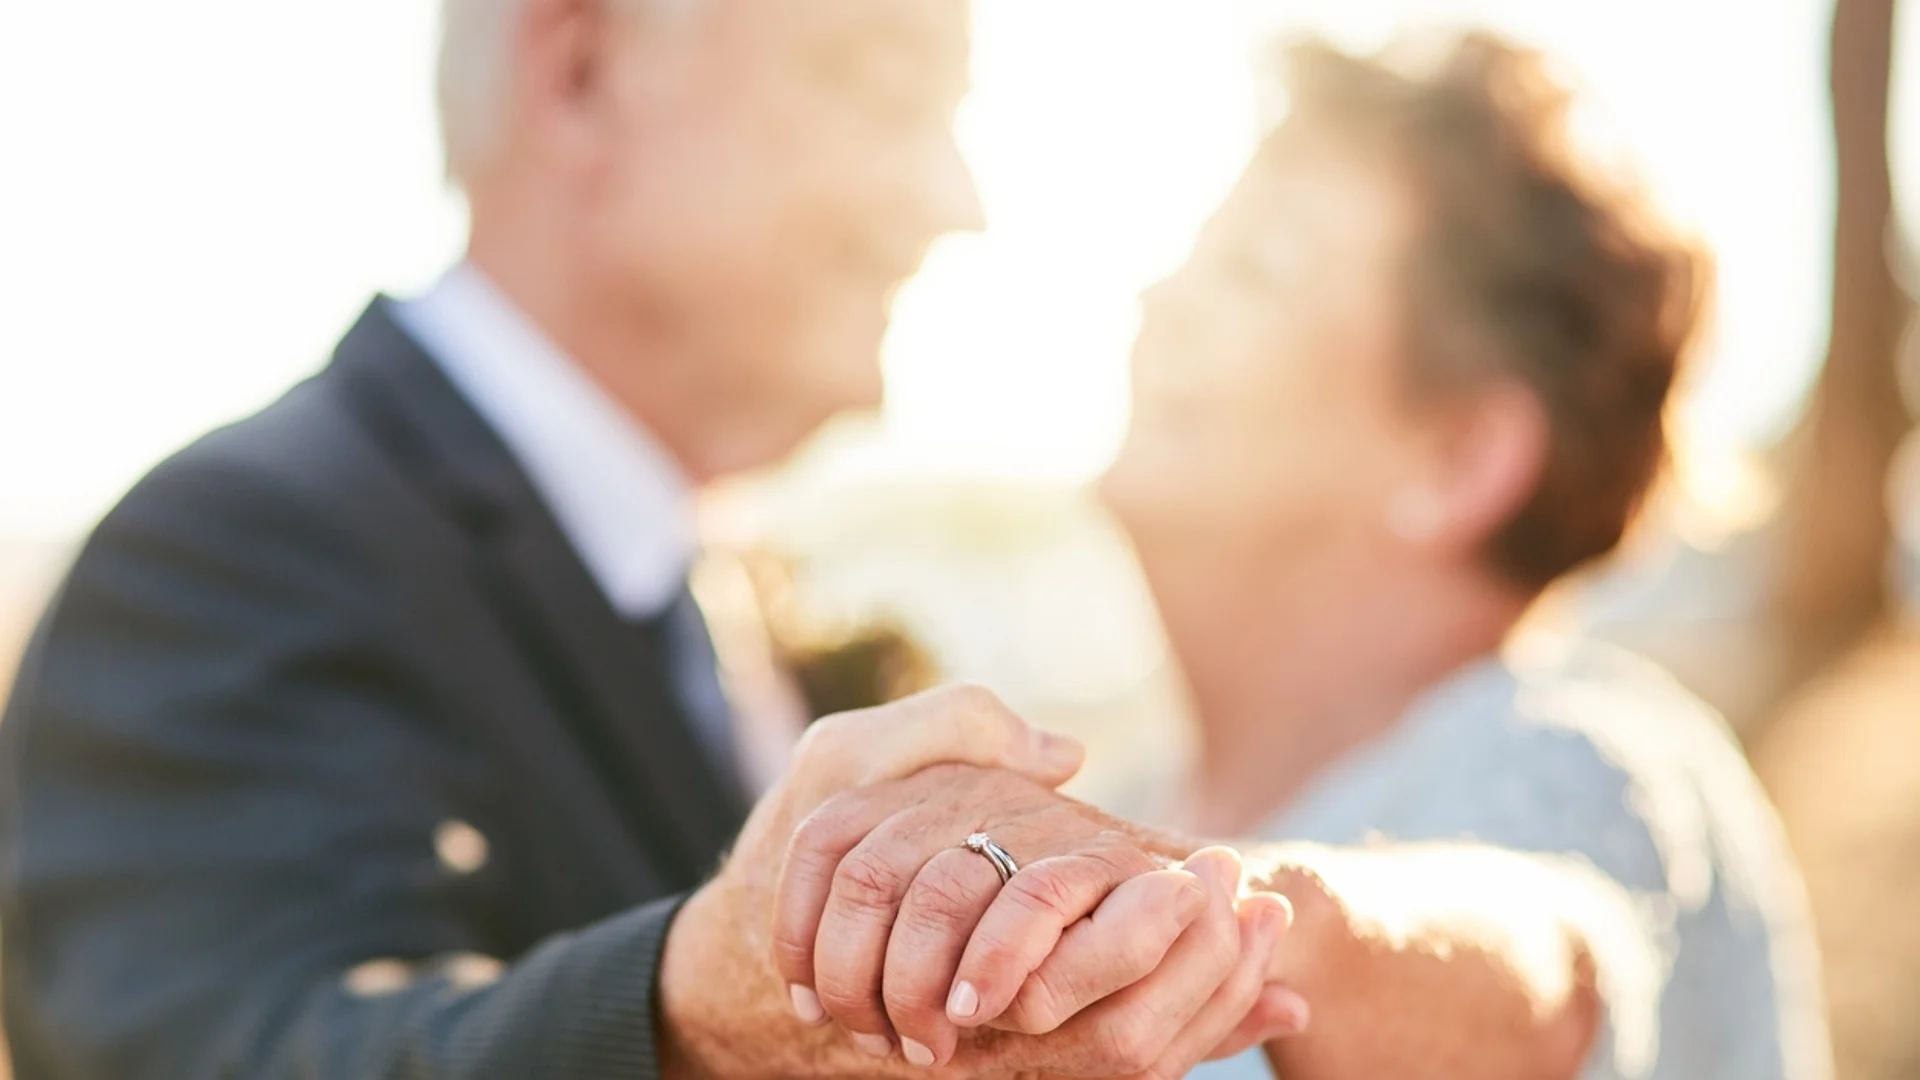 605 души у нас в последните години са се оженили 1 месец преди да умрат